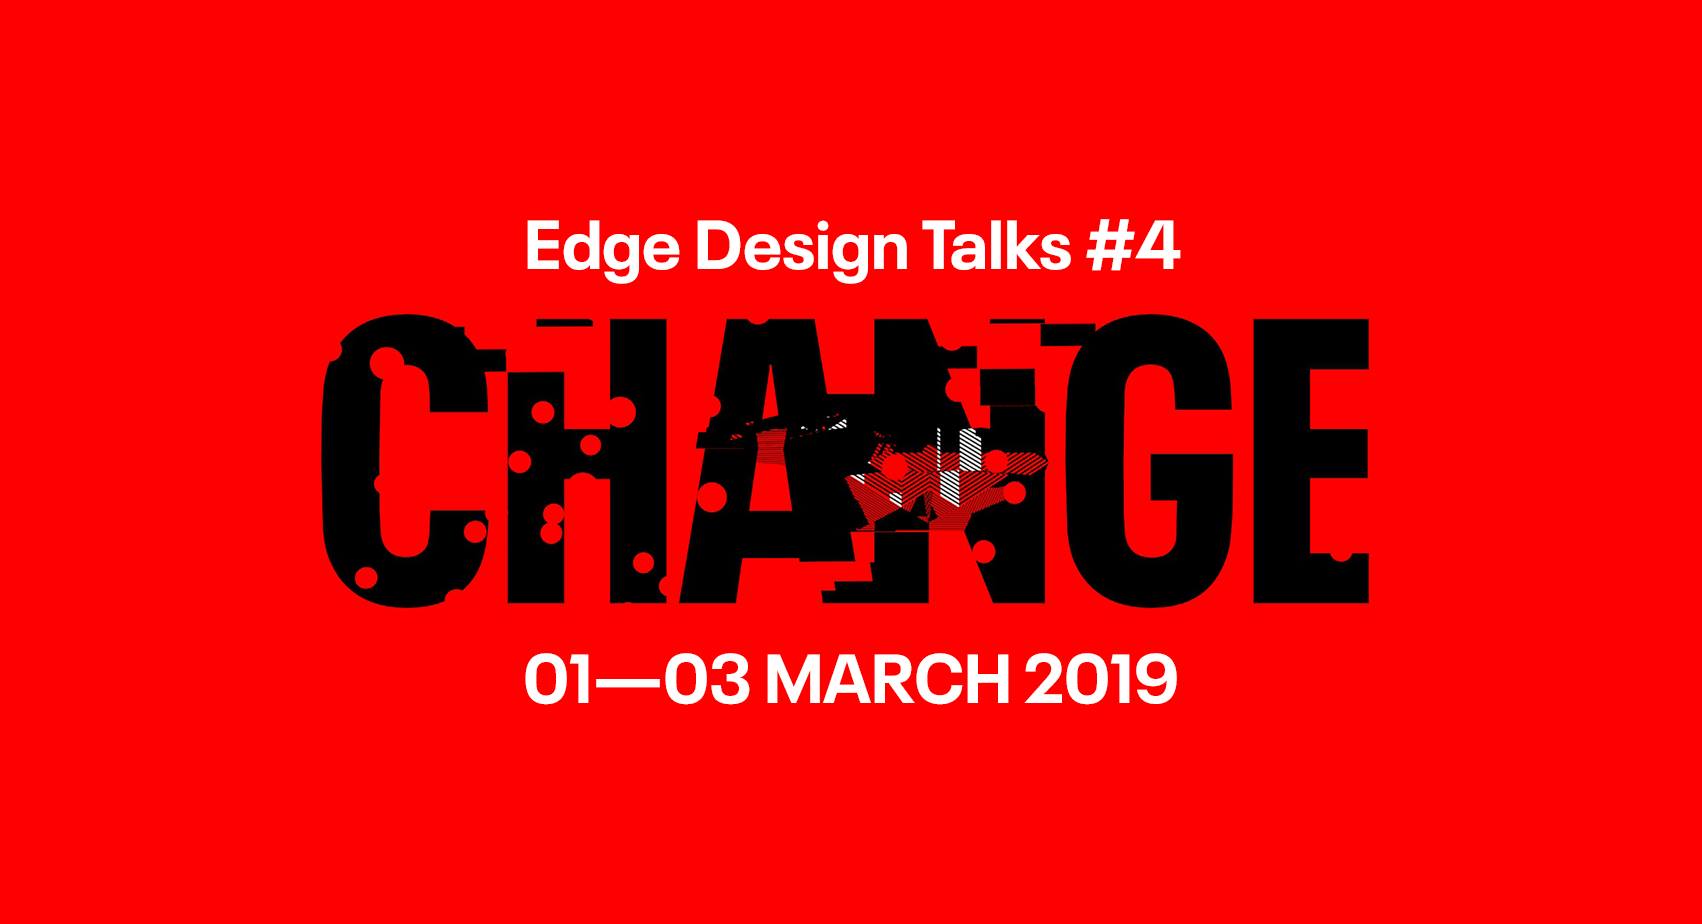 Edge Design Talks #4 – Meet the locals